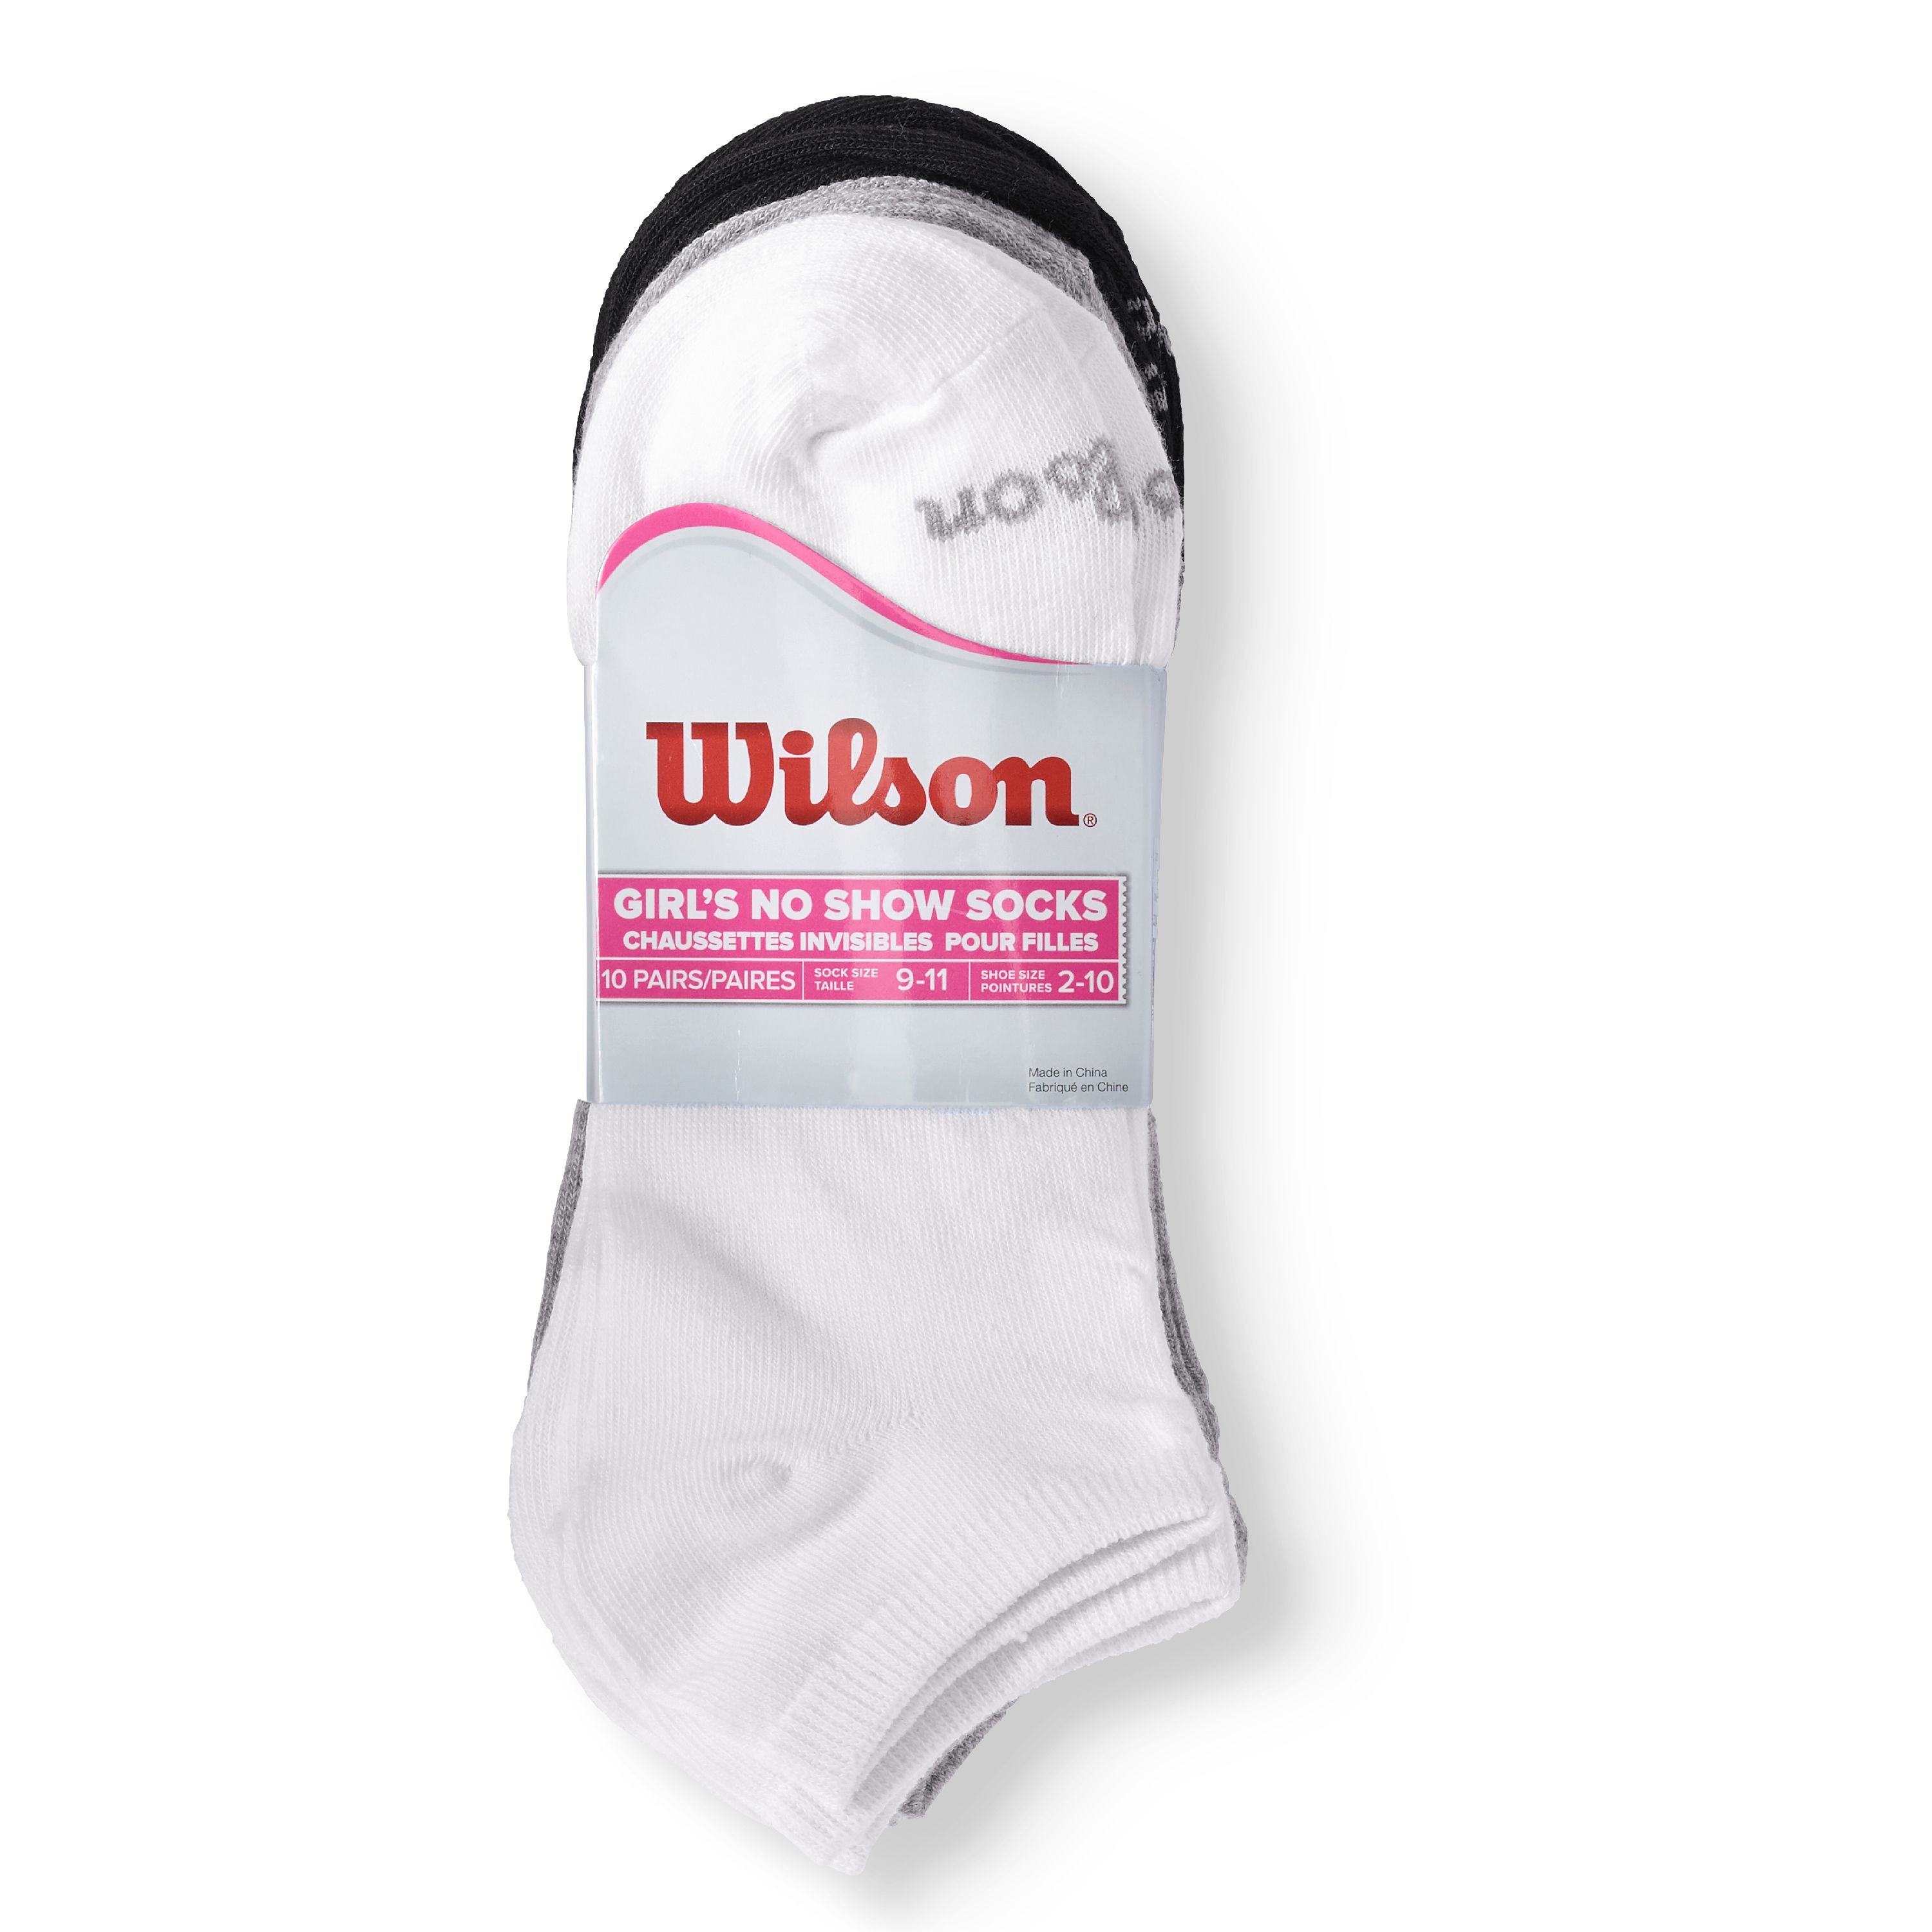 Wilson Girls Socks, 10 Pack Low Cut Athletic Tennis (Big Girls) - image 3 of 3